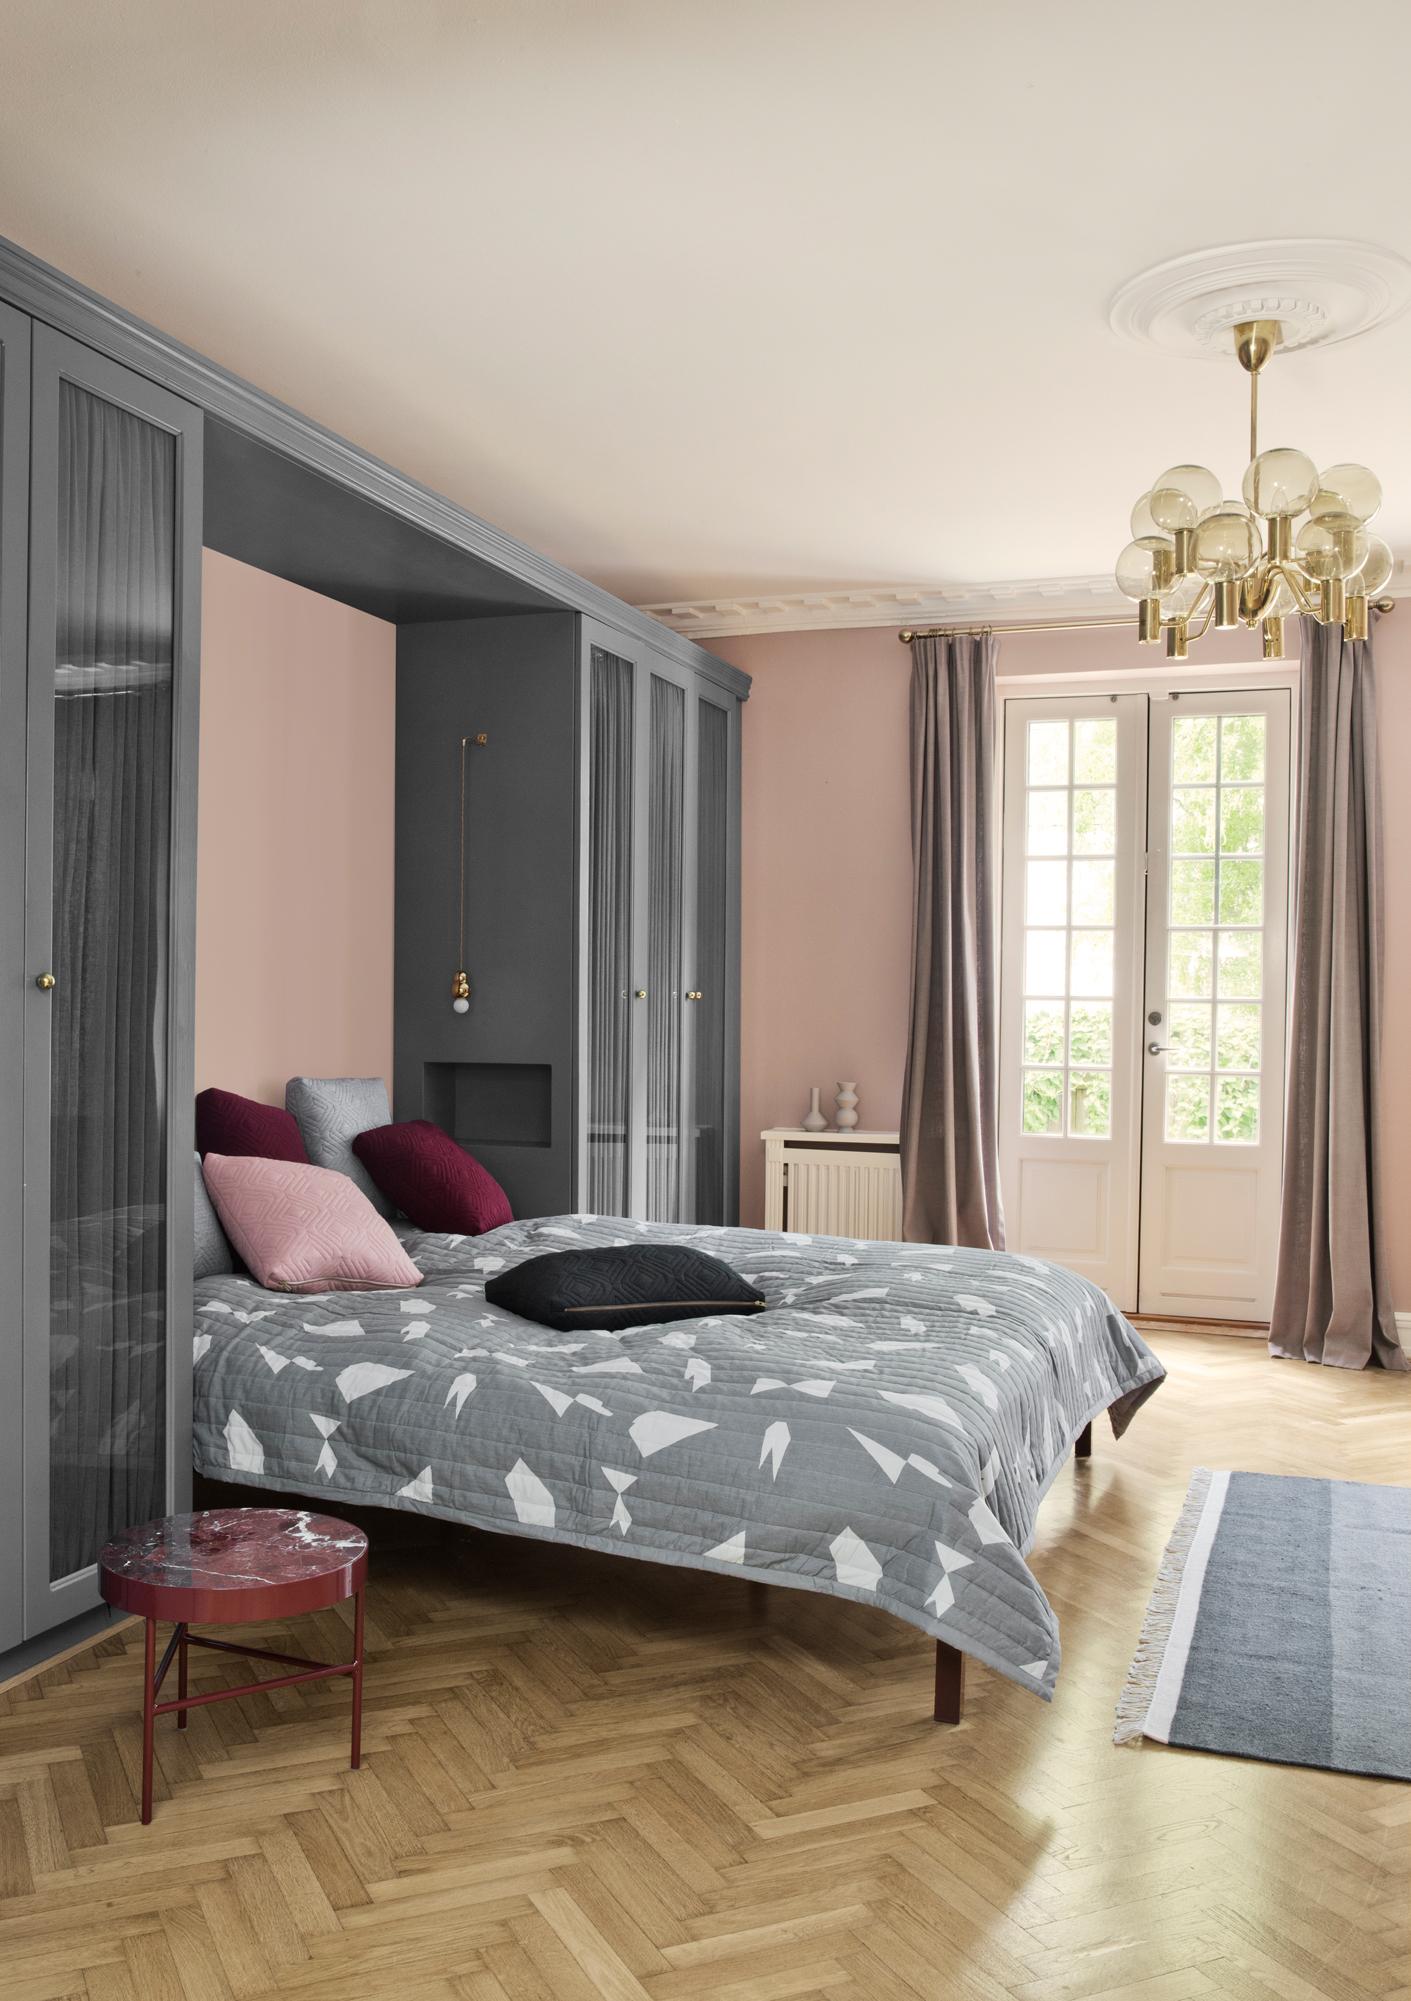 Schlafzimmer in Grau-Rosa #kronleuchter #klappbett #grauewandfarbe #schlafzimmergestalten ©Ferm Living